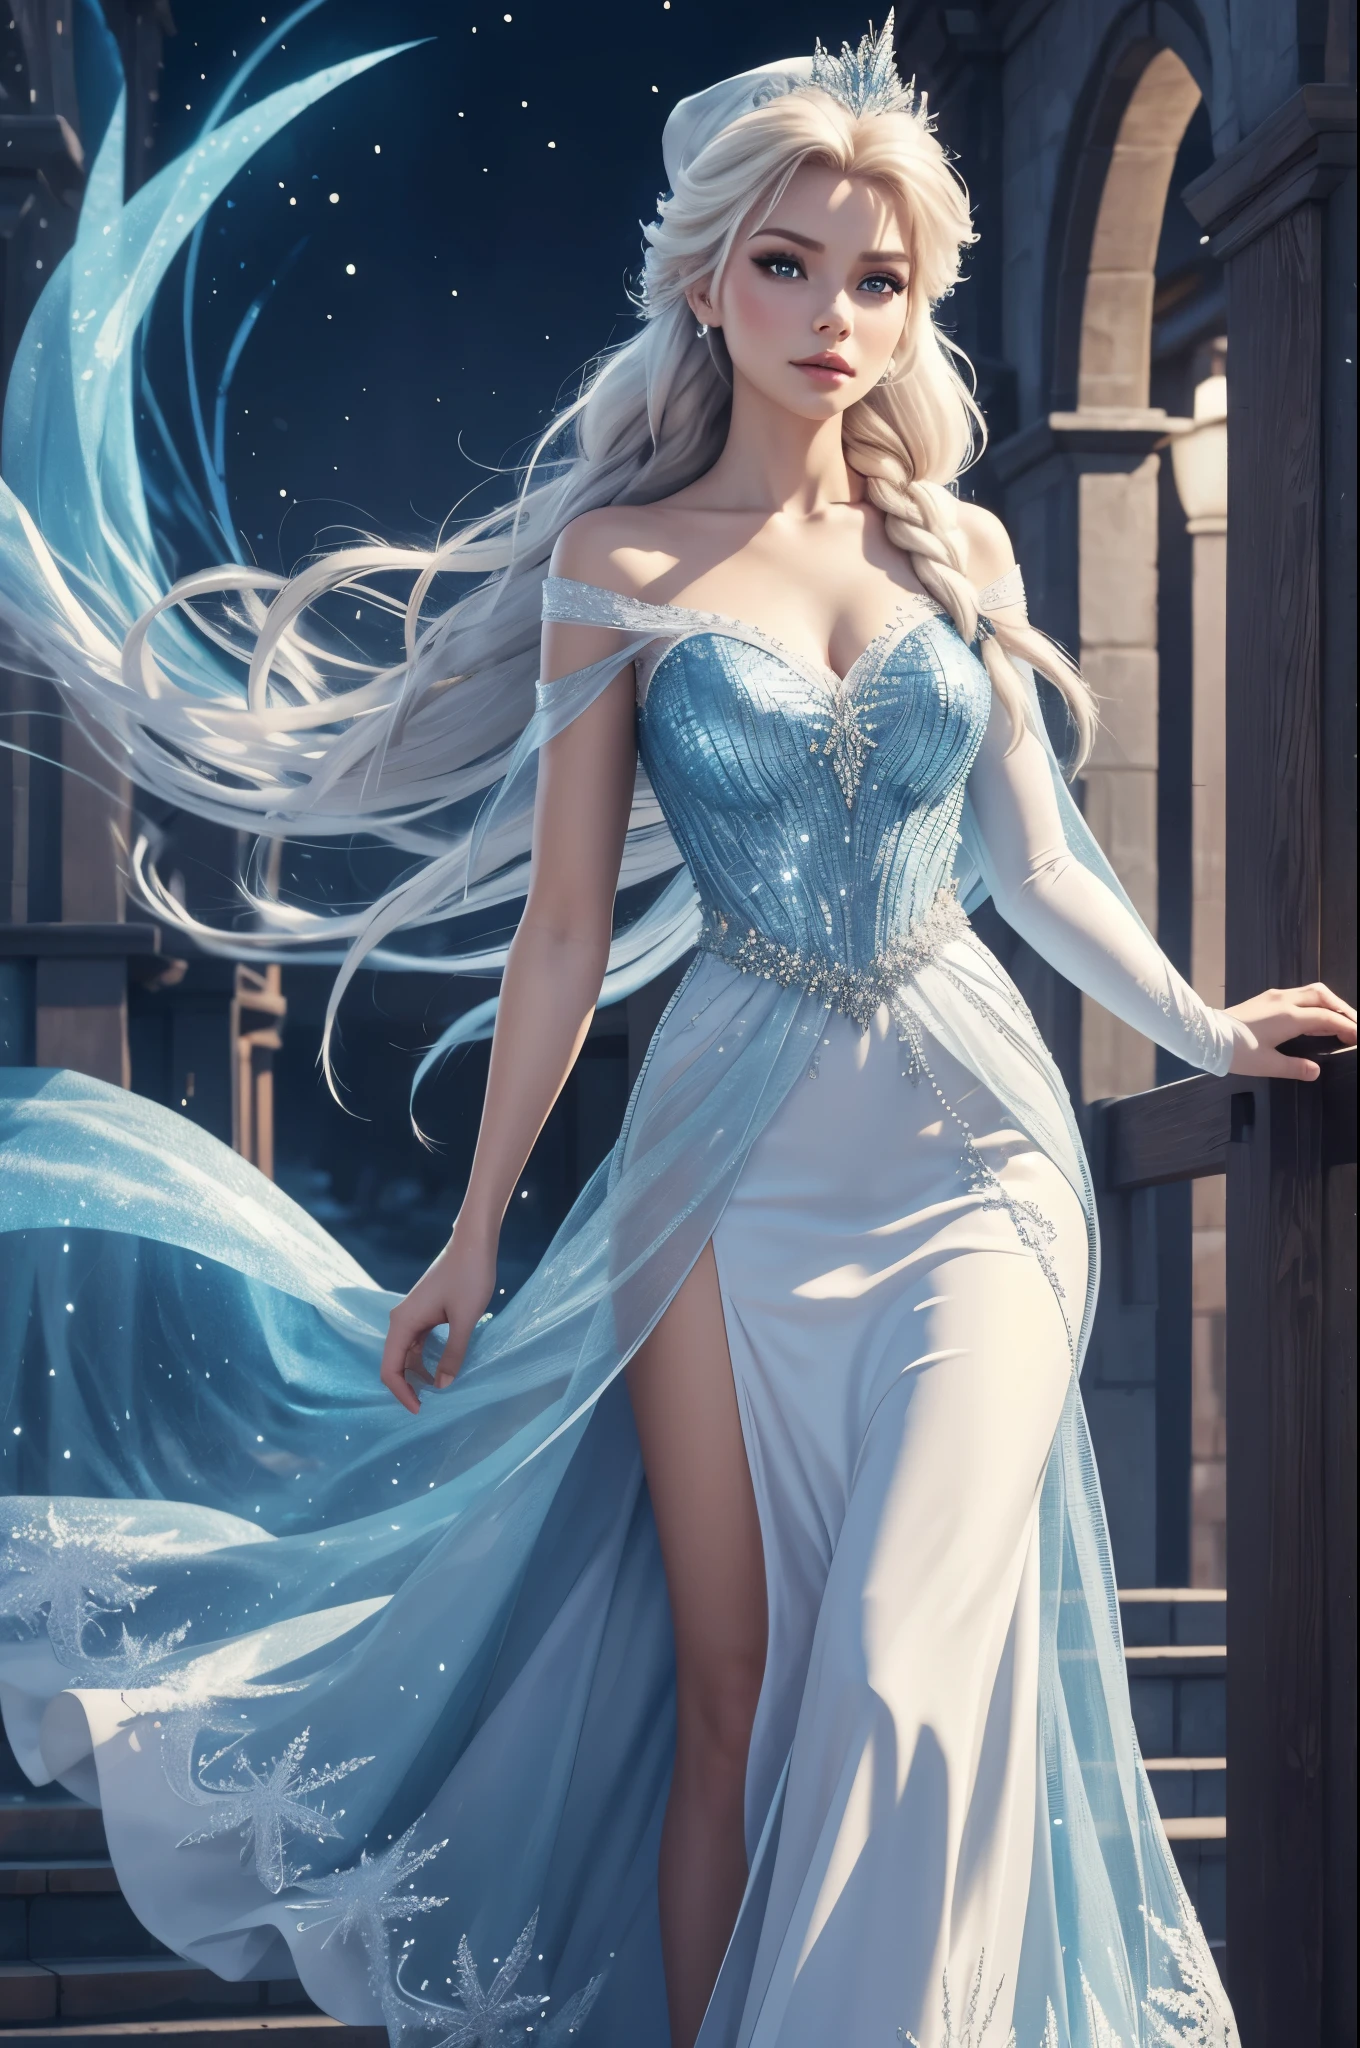 Erstellen Sie ein realistisches Bild von Elsa aus Frozen, echter Charakter Frozen Elsa, modern gekleidet für eine Silvesterparty . HDR 8K Texturkleid, visuelles Rendern Elsa, Elsa sollte ein rotes tragen, zartes langes Kleid , zusammen mit einer Weihnachtsmütze. Das Kleid sollte stilvoll und für eine Prinzessin geeignet sein. Silvesterkleid mit echten Federn und Quasten